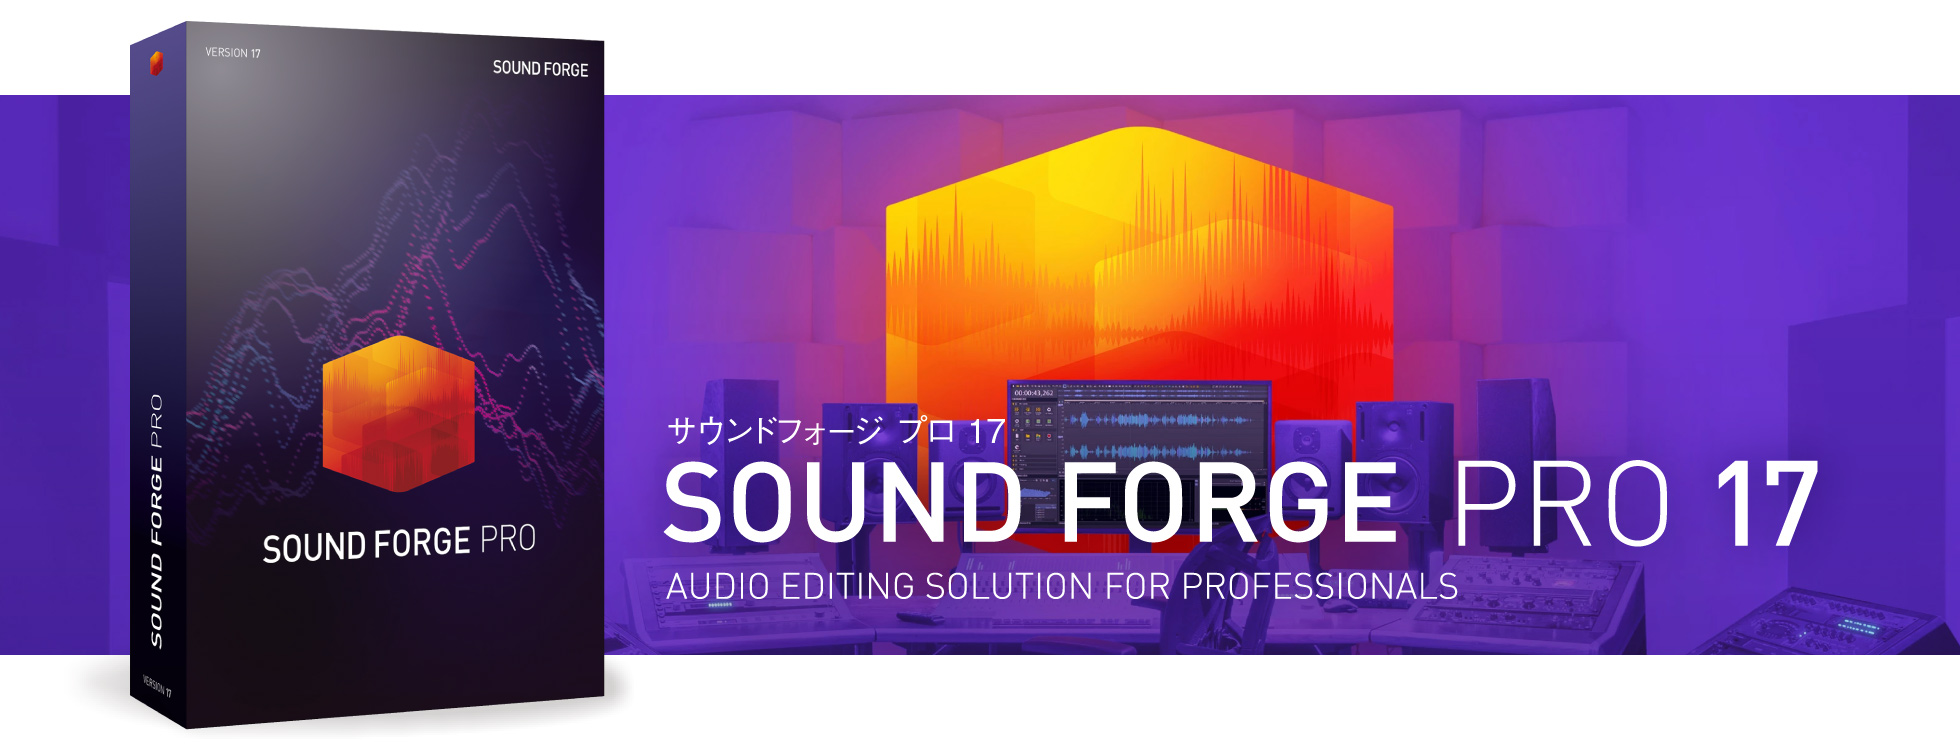 プロのサウンド編集ソフト「SOUND FORGE Pro 17」